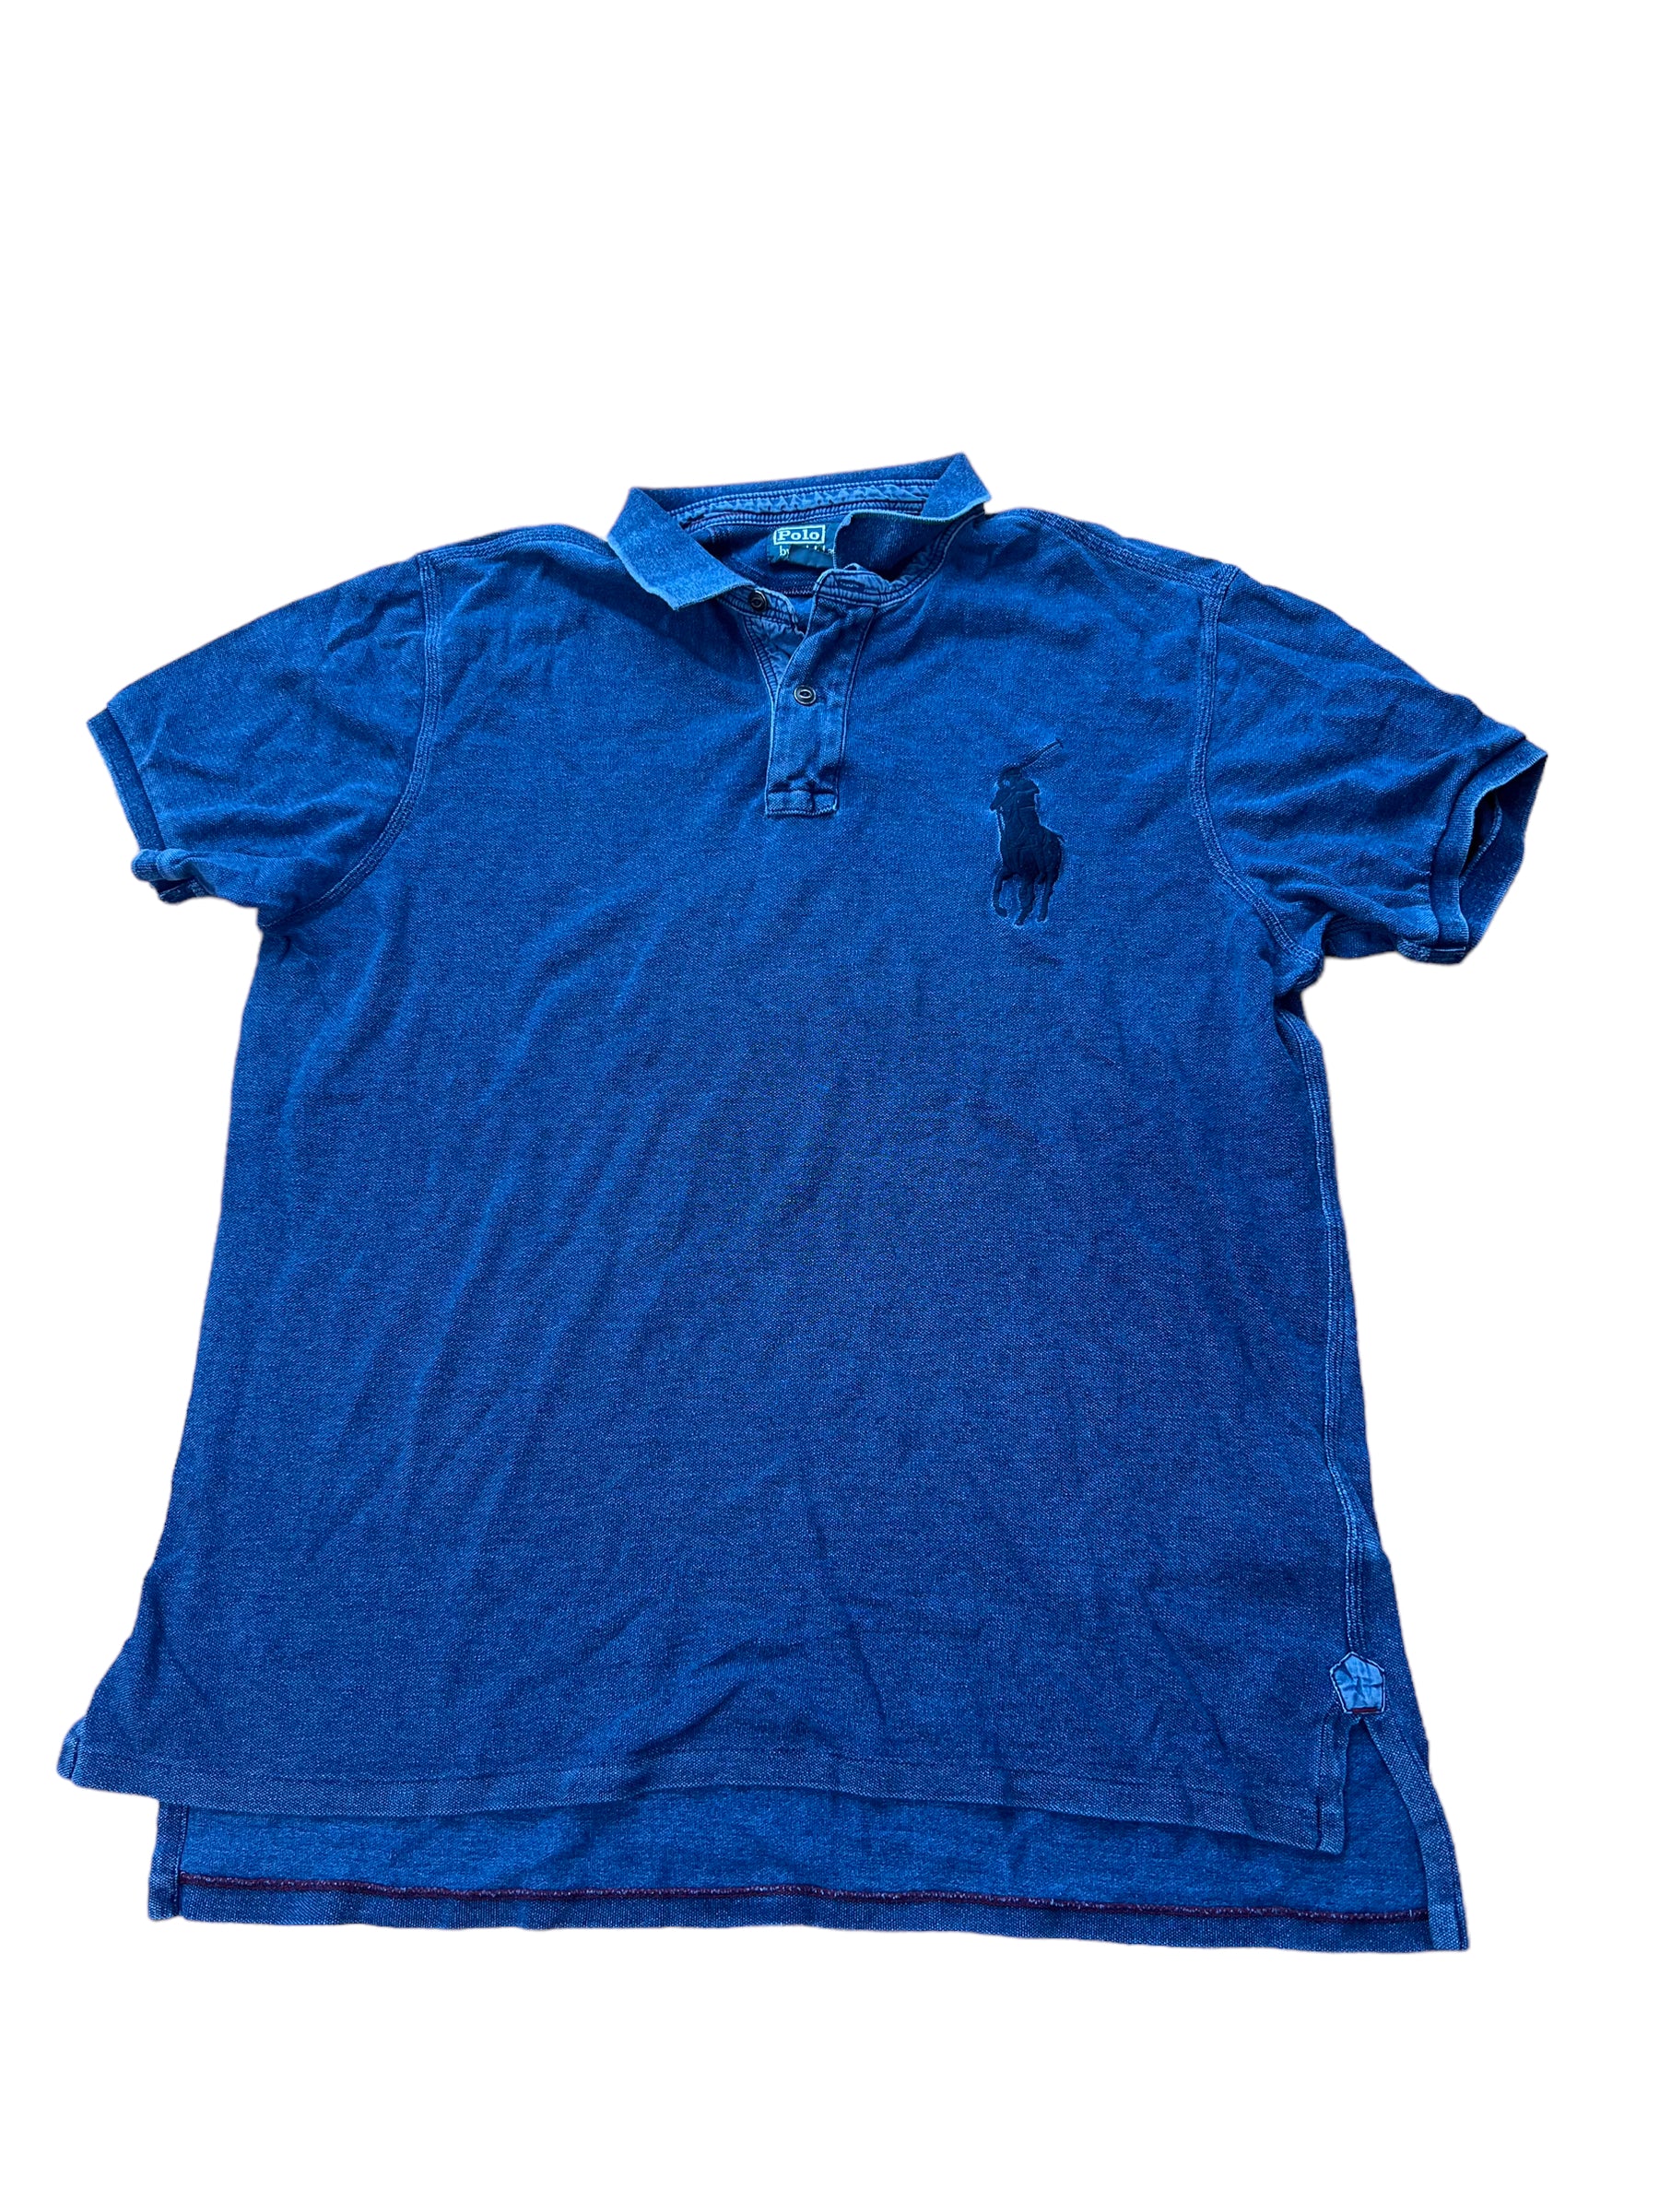 Ralph Lauren Mens Polo Shirt